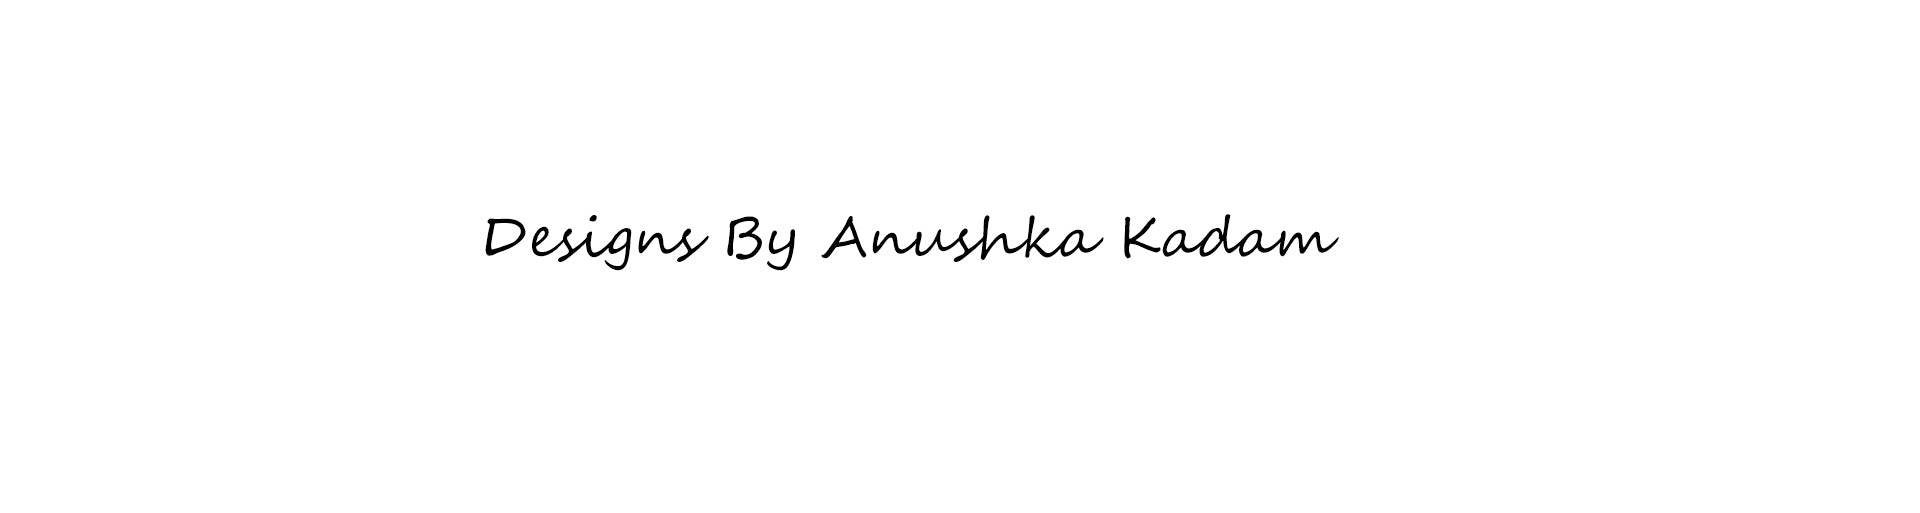 Anushka Kadam